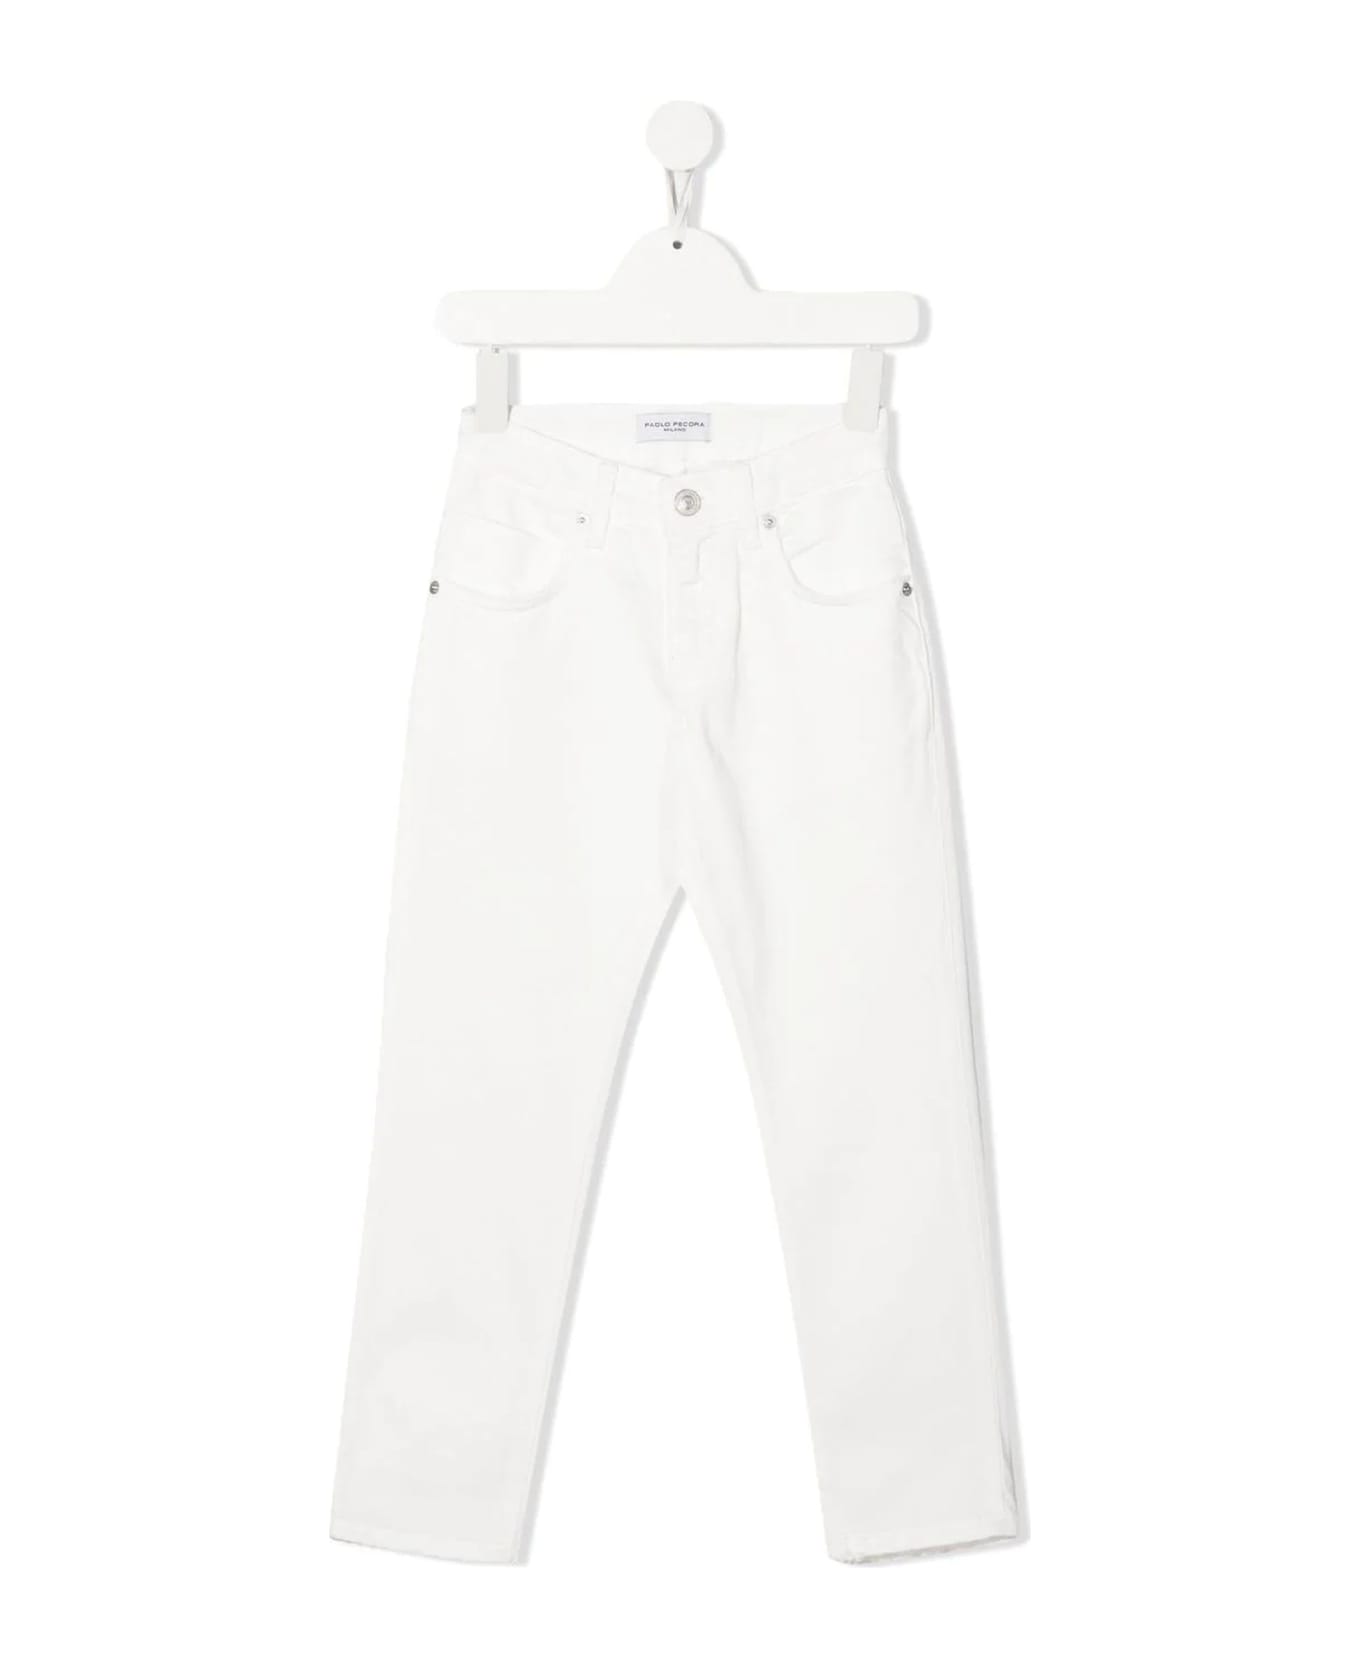 Paolo Pecora Trousers White - White